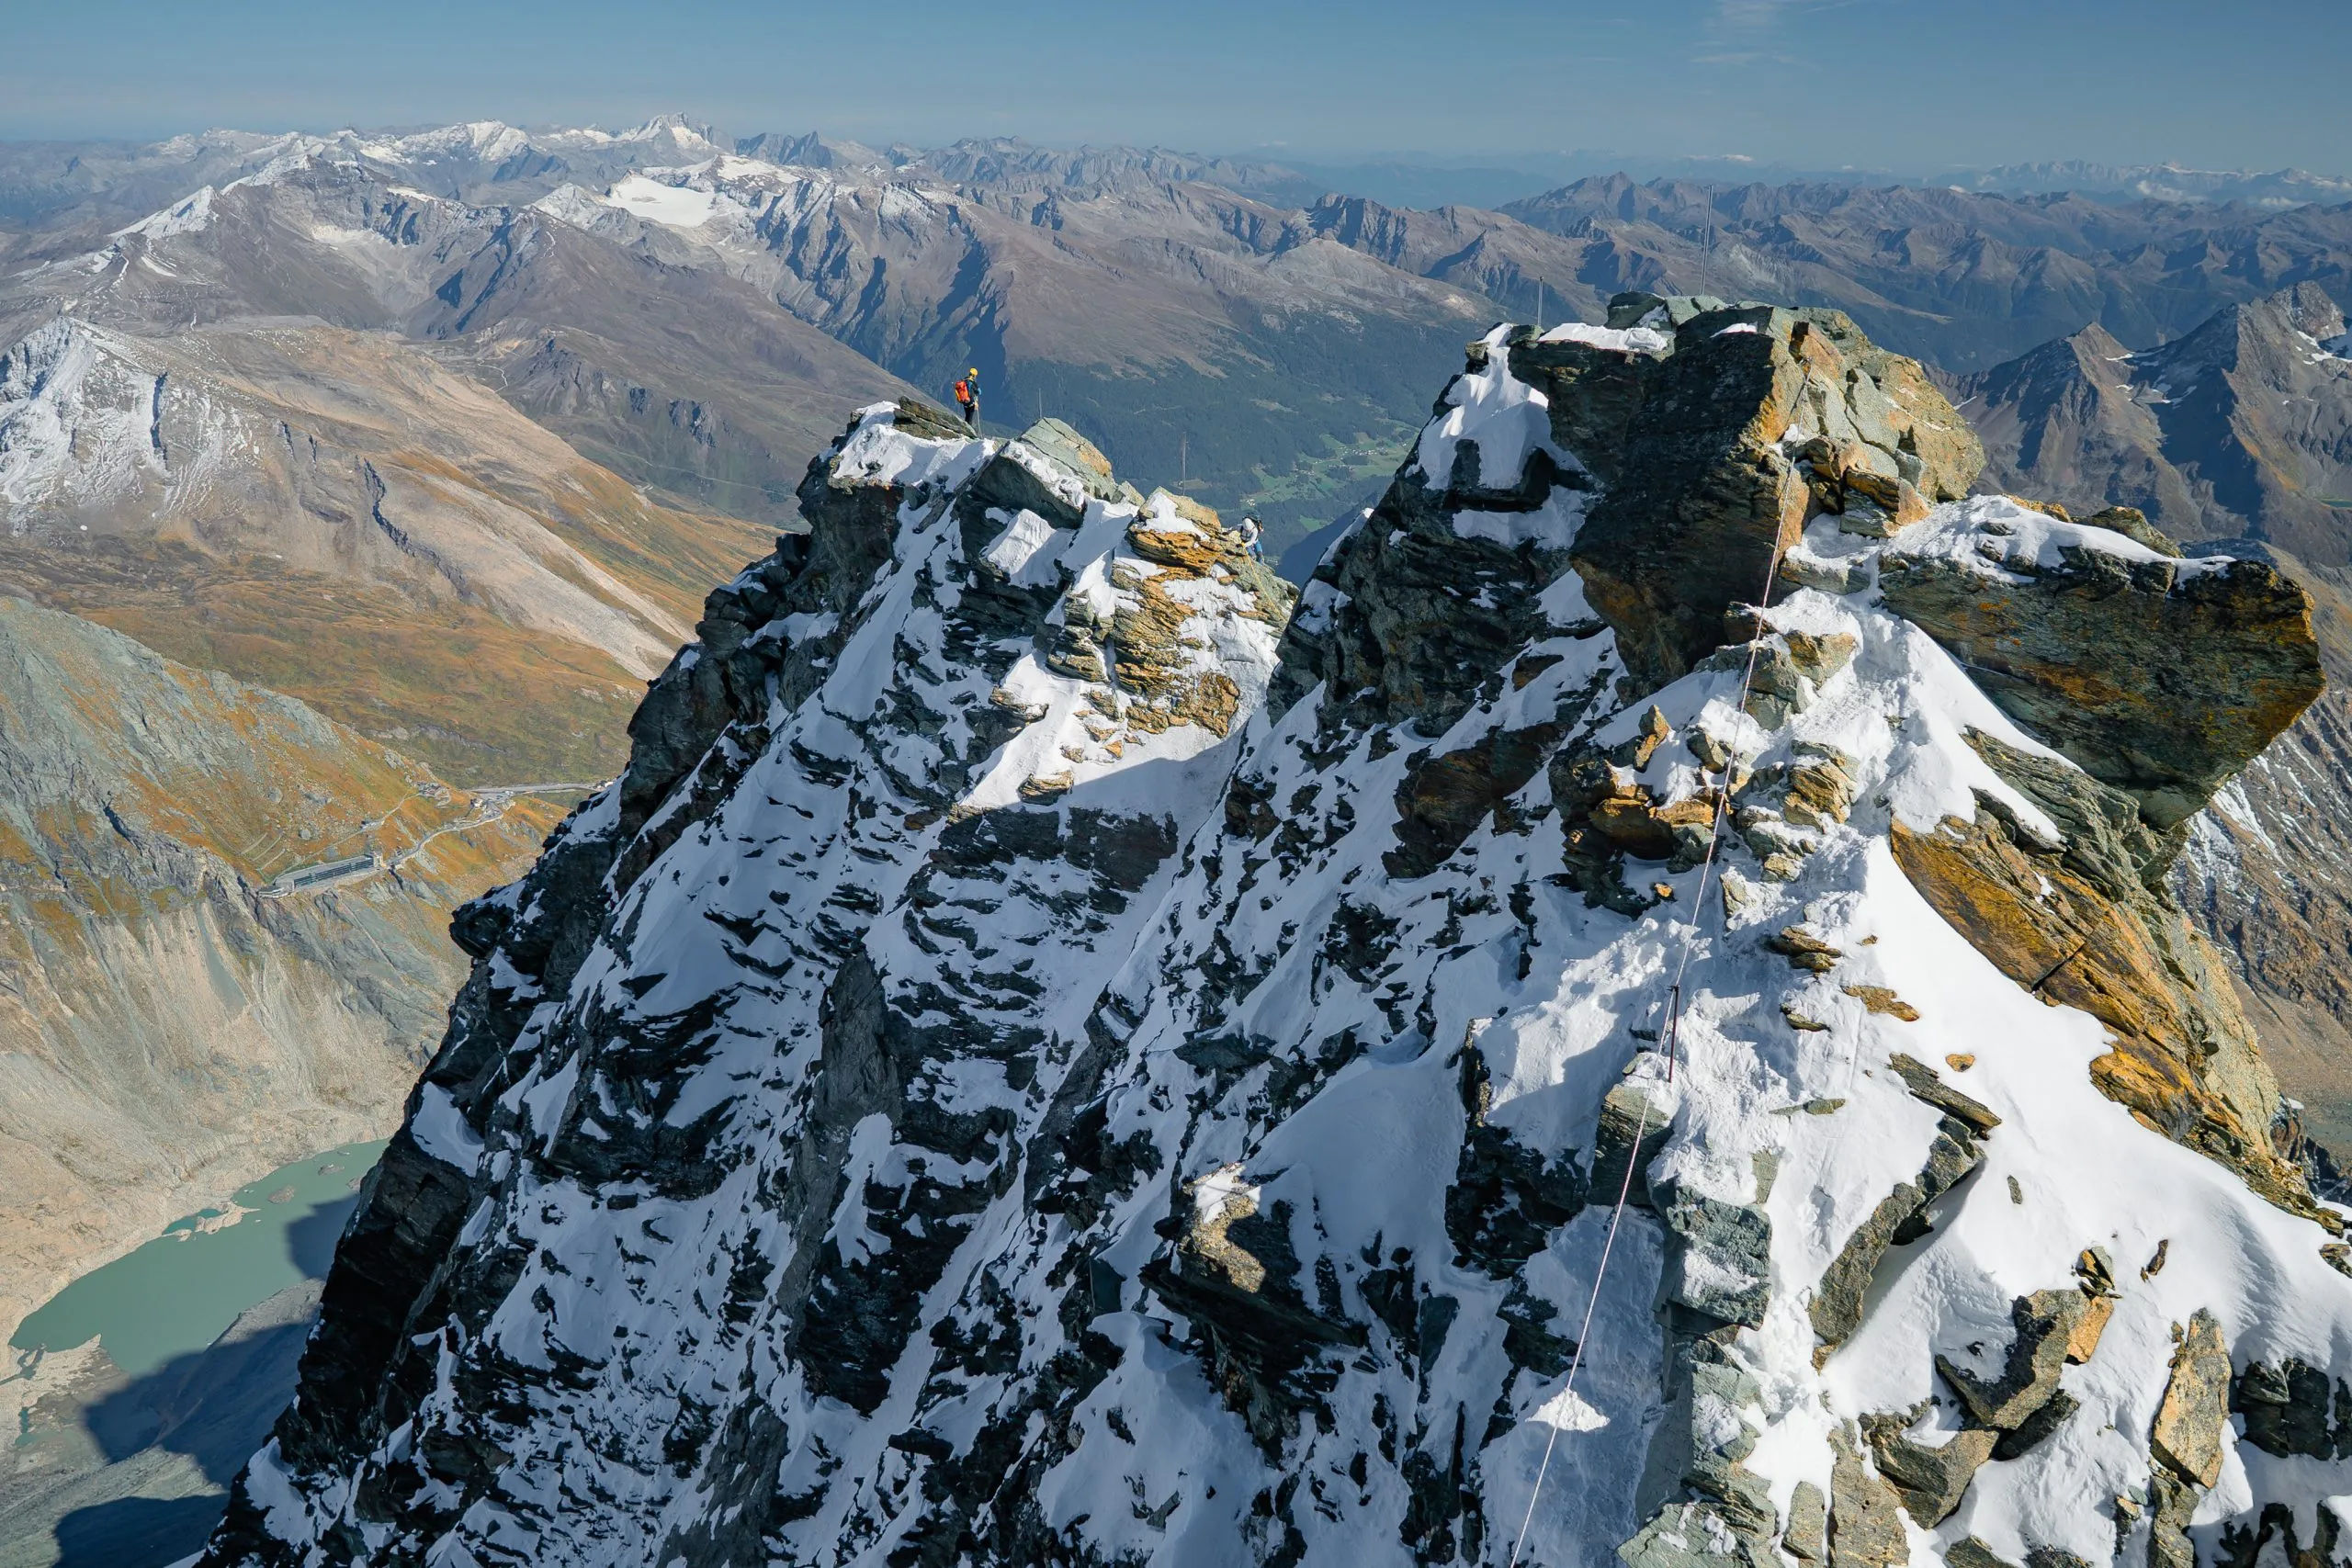 Beeindruckende Aussicht vom höchsten Gipfel Österreichs. Atemberaubendes Foto vom Großglockner, dem höchsten Berg Österreichs.